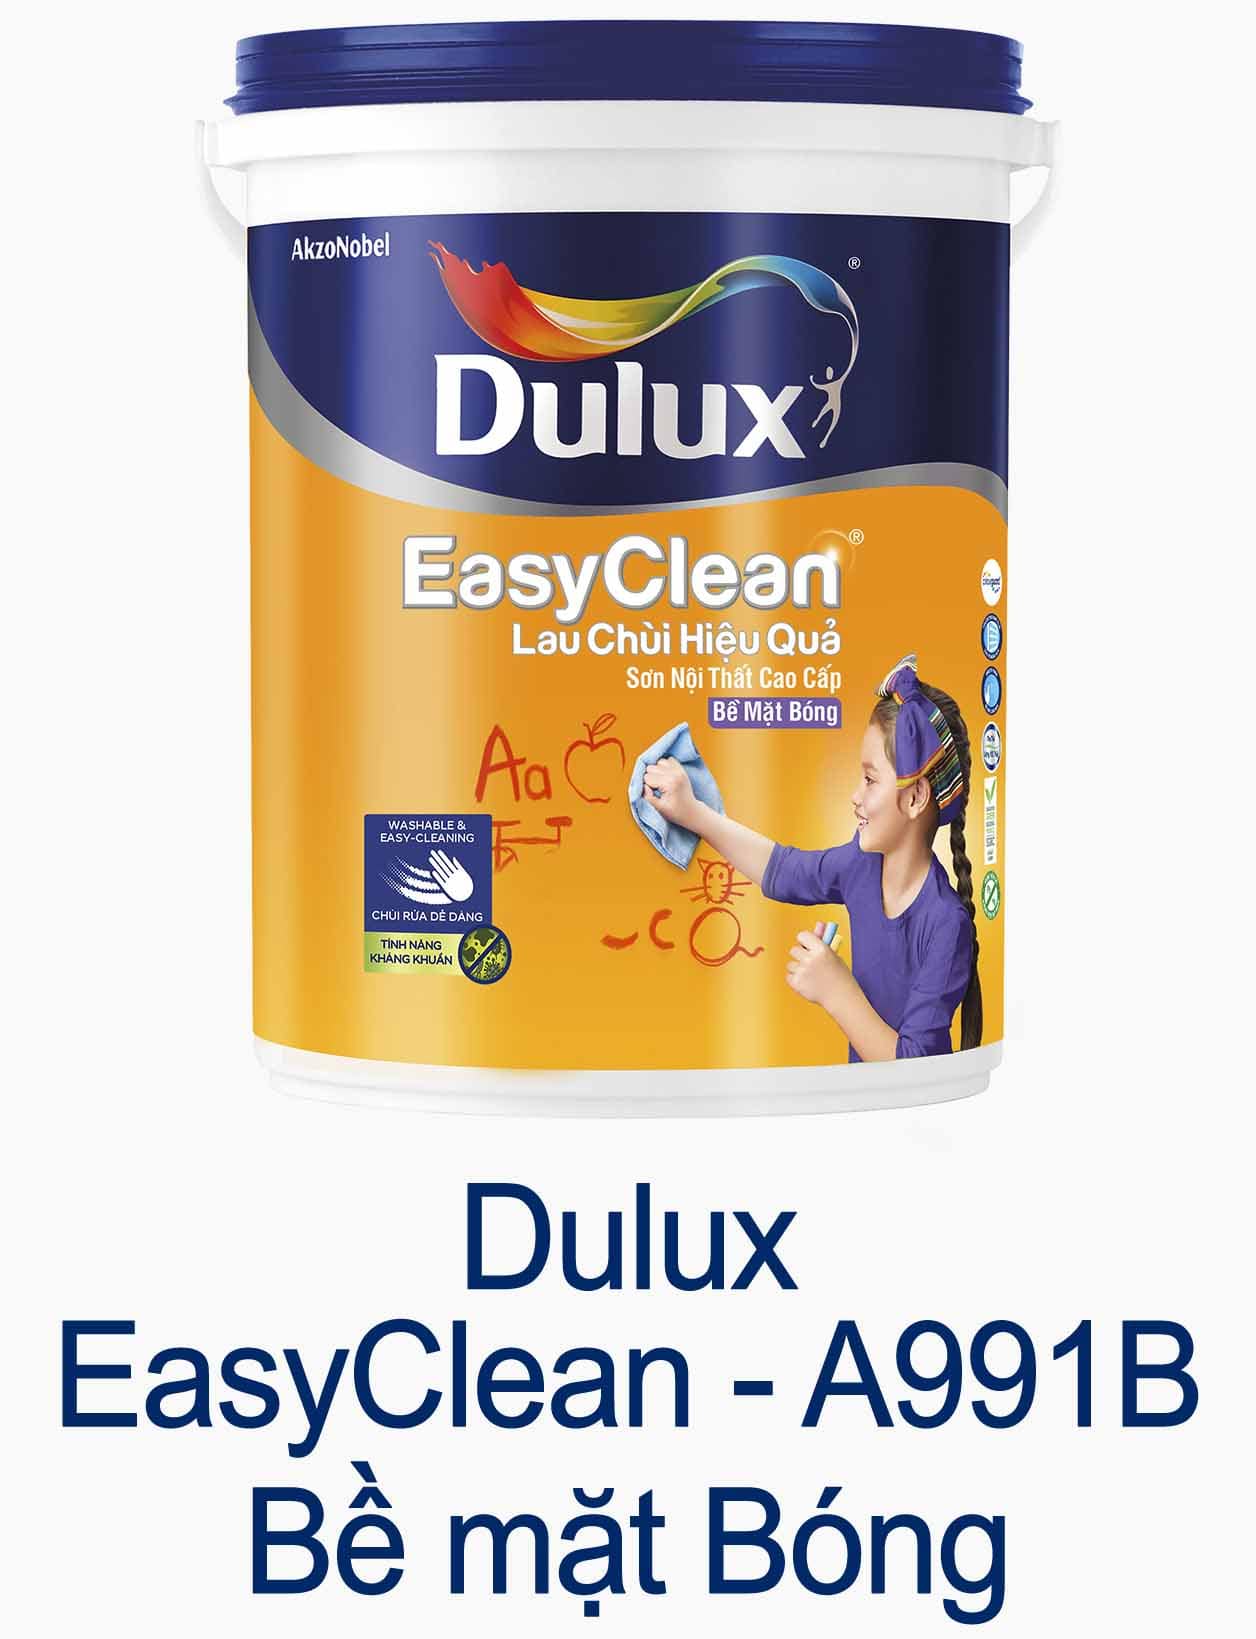 A991B Dulux - Sơn Dulux trong nhà, ngoài trời | Các loại sơn Dulux cao cấp, giá rẻ